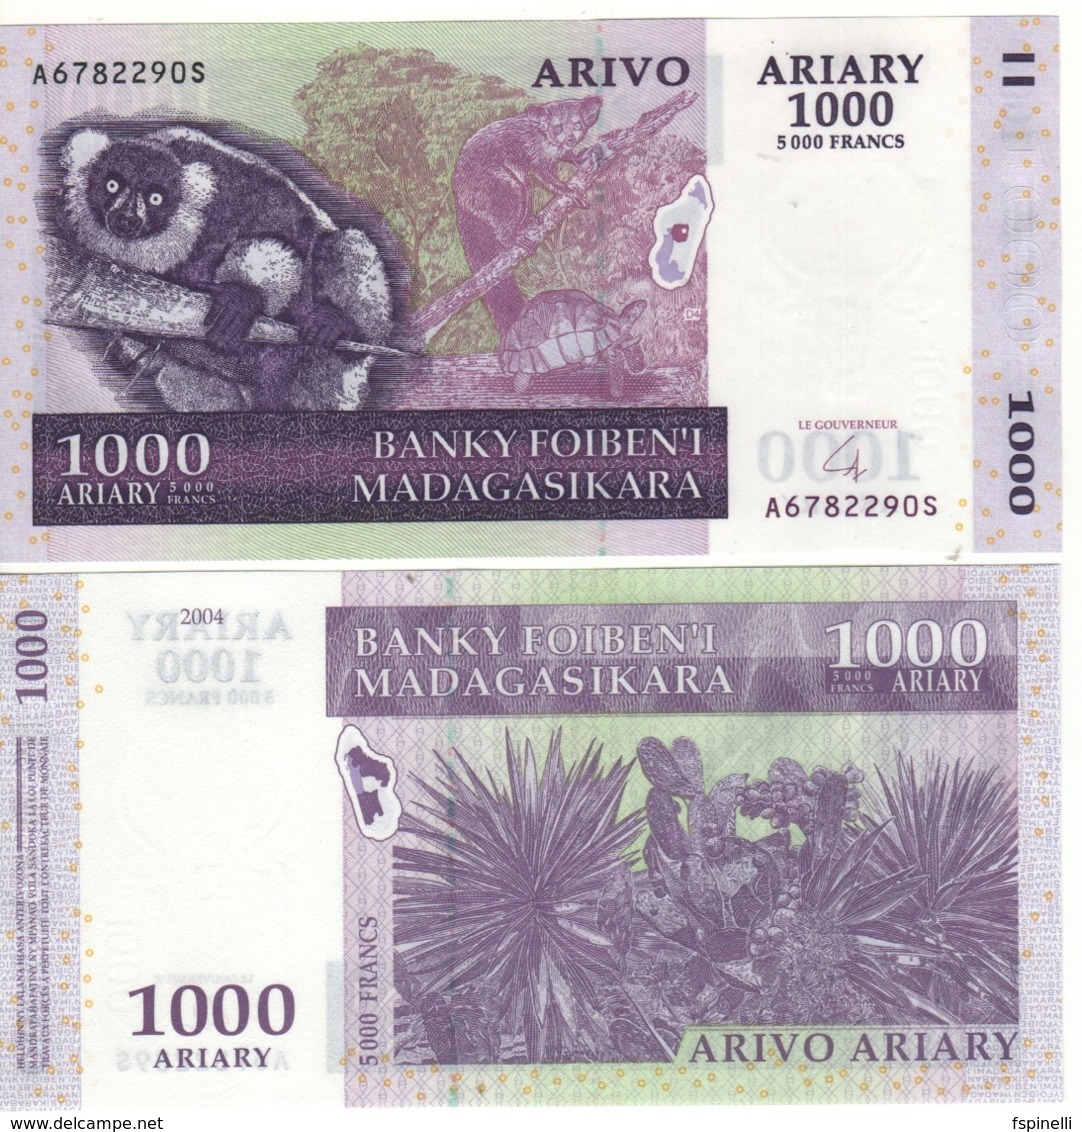 MADAGASCAR  1'000 Ariary  5'000 Francs      P89b  (ND  2004) - Madagaskar